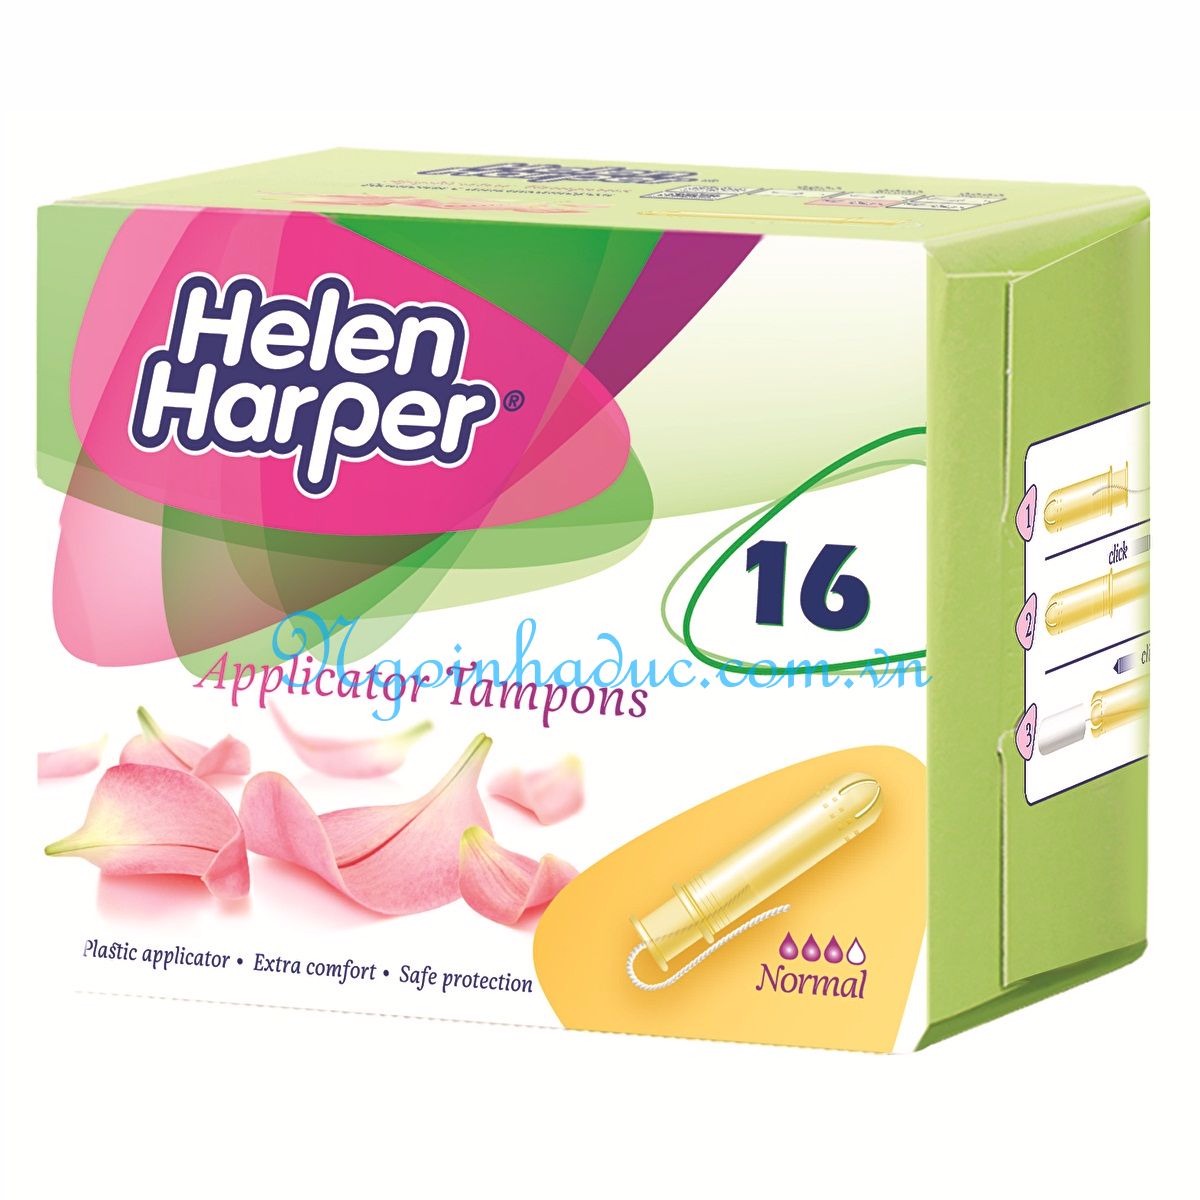 Băng vệ sinh tampons normal Helen Harper có cần đẩy (hộp 16c)